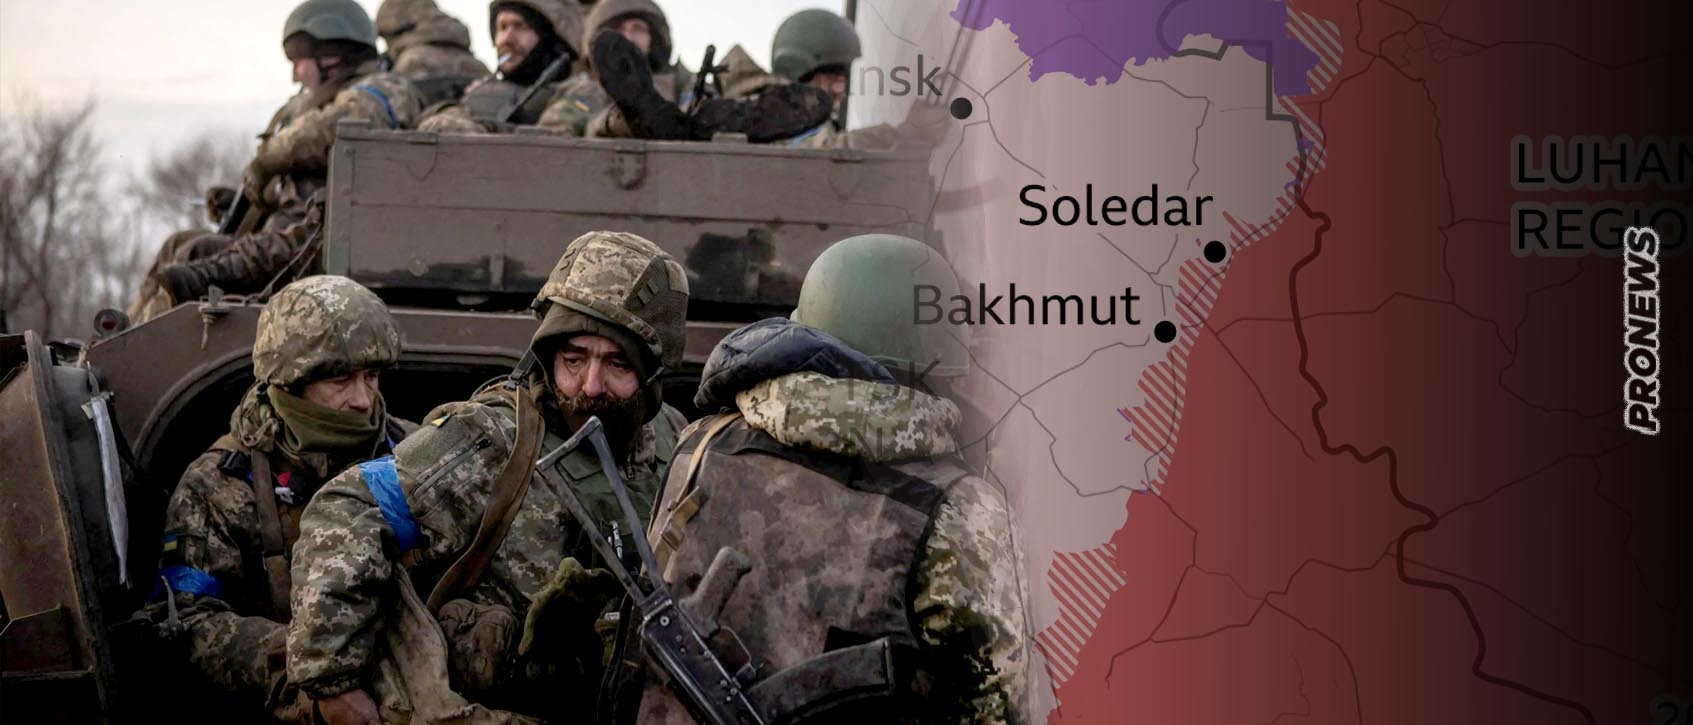 Ουκρανός στρατιώτης στο Μπάκχμουτ: «Δεν ξέρω τα σχέδια της κυβέρνησής μας αλλά μάλλον θέλει την εξόντωση του πληθυσμού της Ουκρανίας»